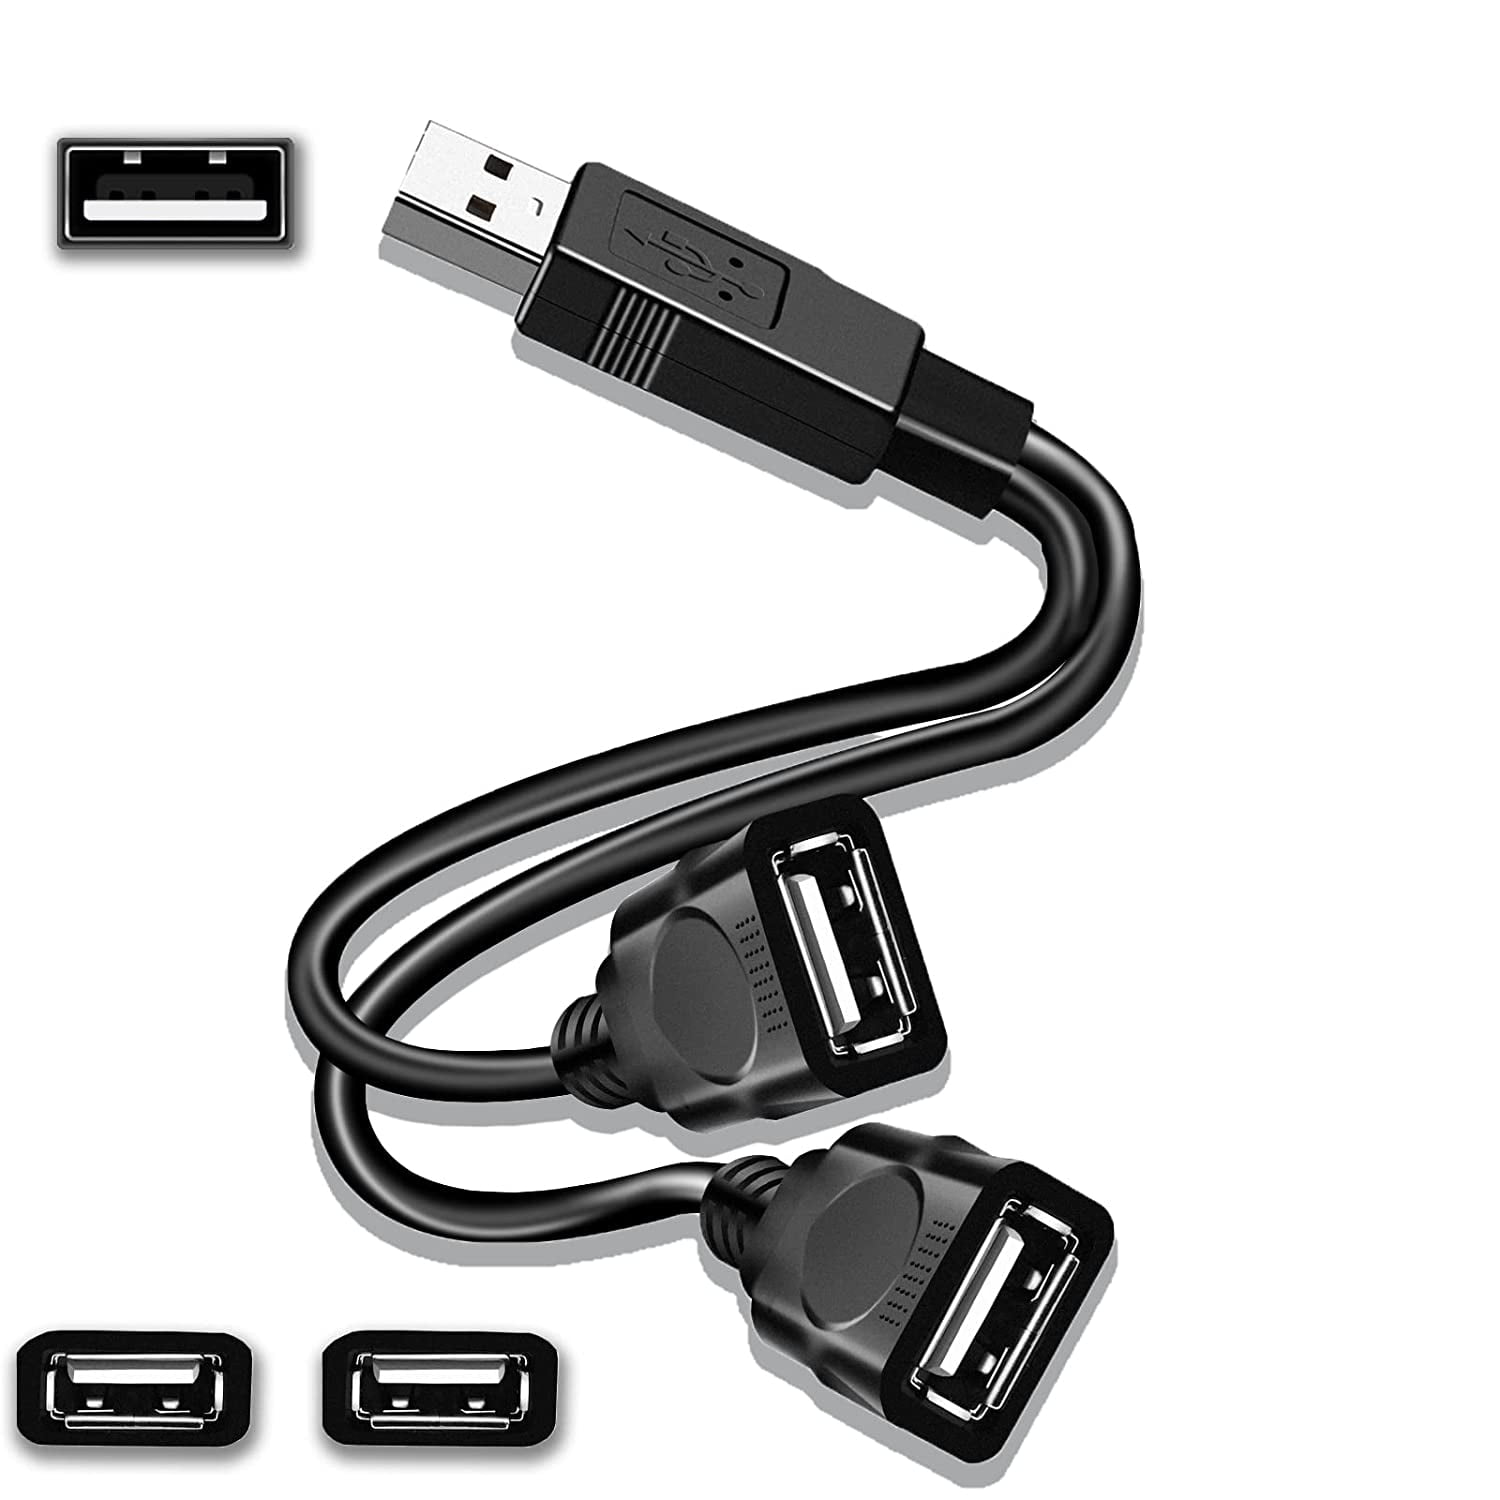 efterår Udvidelse plantageejer USB Splitter Cable, USB 2.0 Y Splitter Cord, USB A Male to Dual USB A  Female Adapter Cable USB Y Cable Extension Cord - Walmart.com